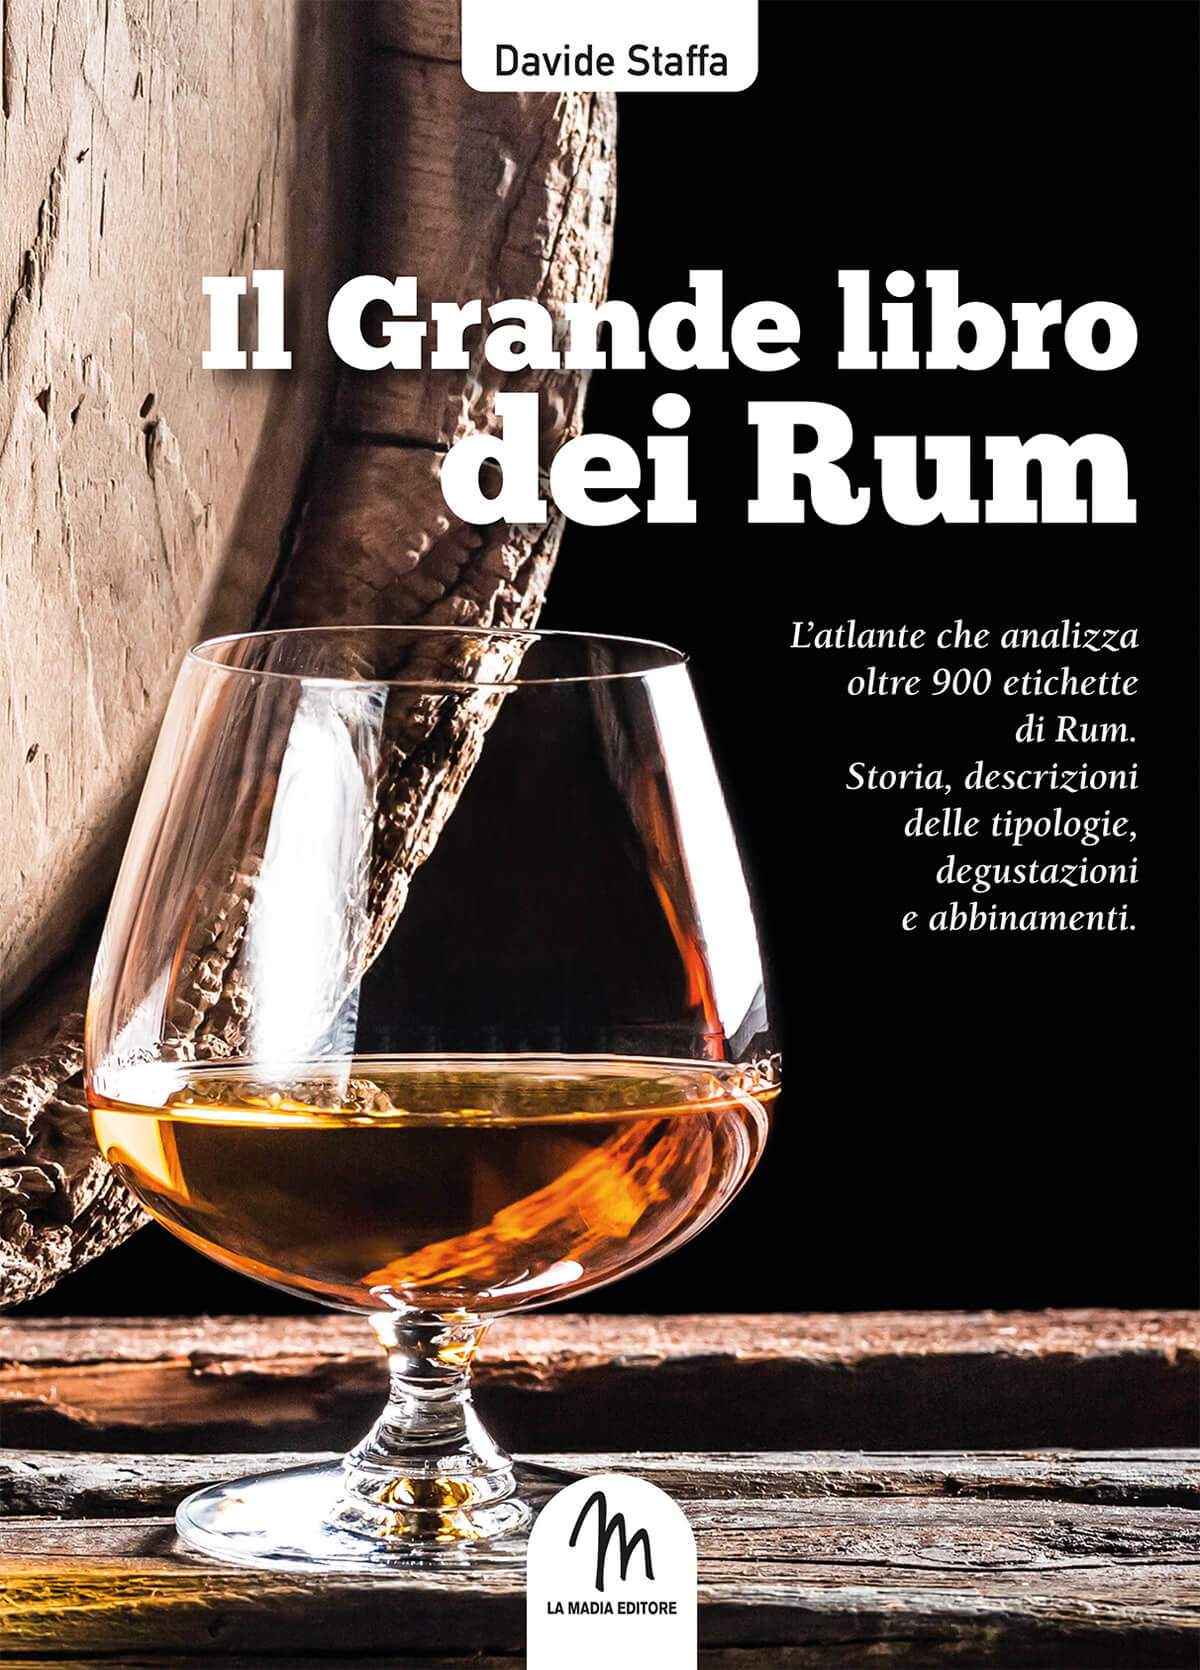 Incontri diVini 2019 alla Baita di Faenza: protagonista il Rum